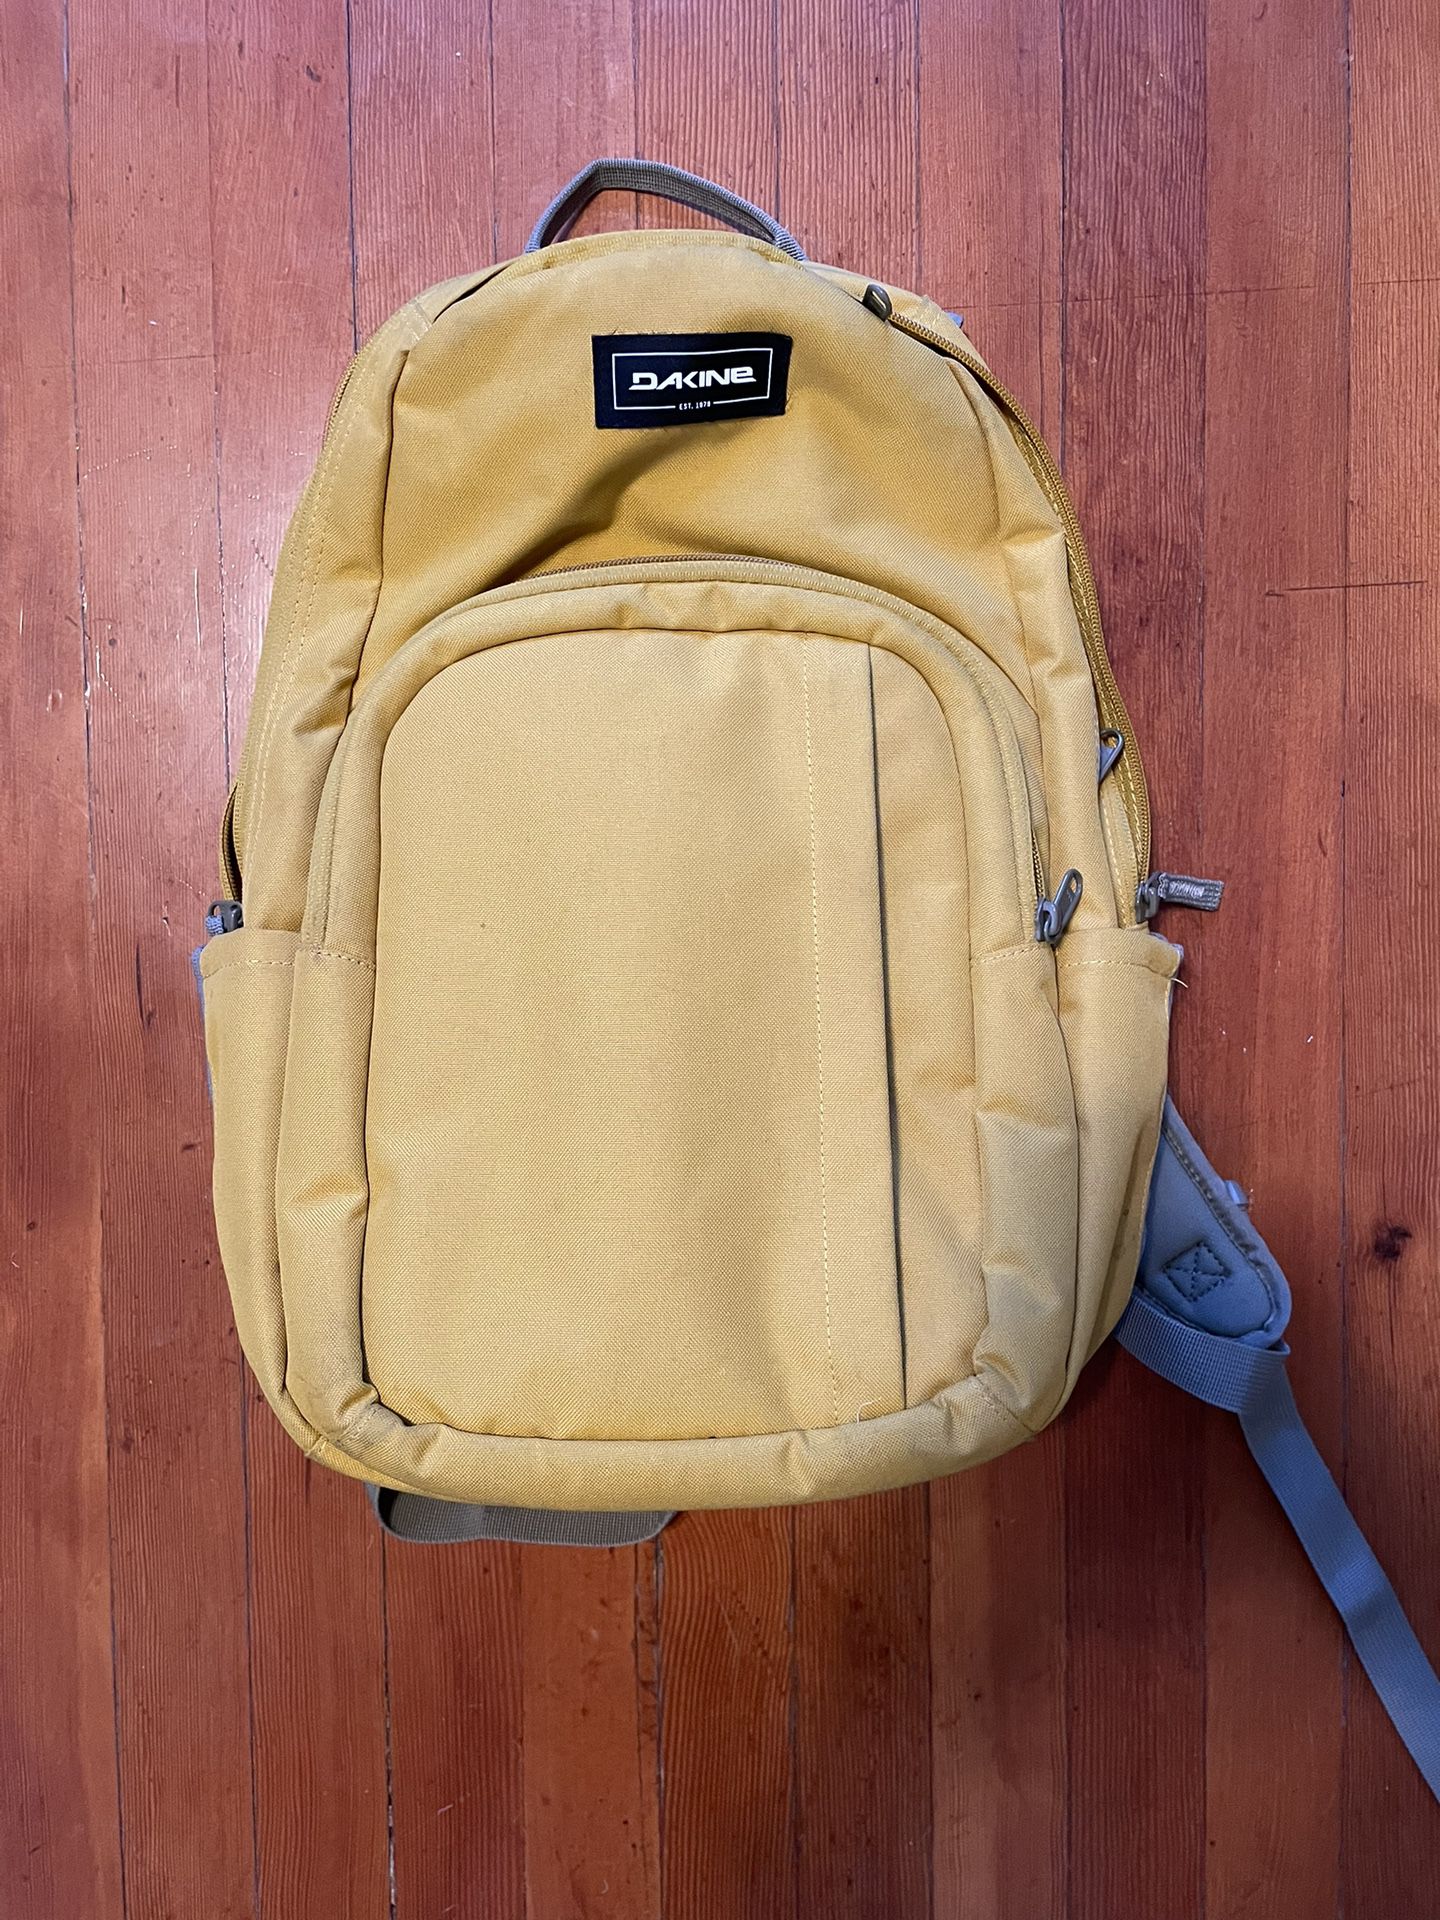 Dakine Backpack Yellow $20